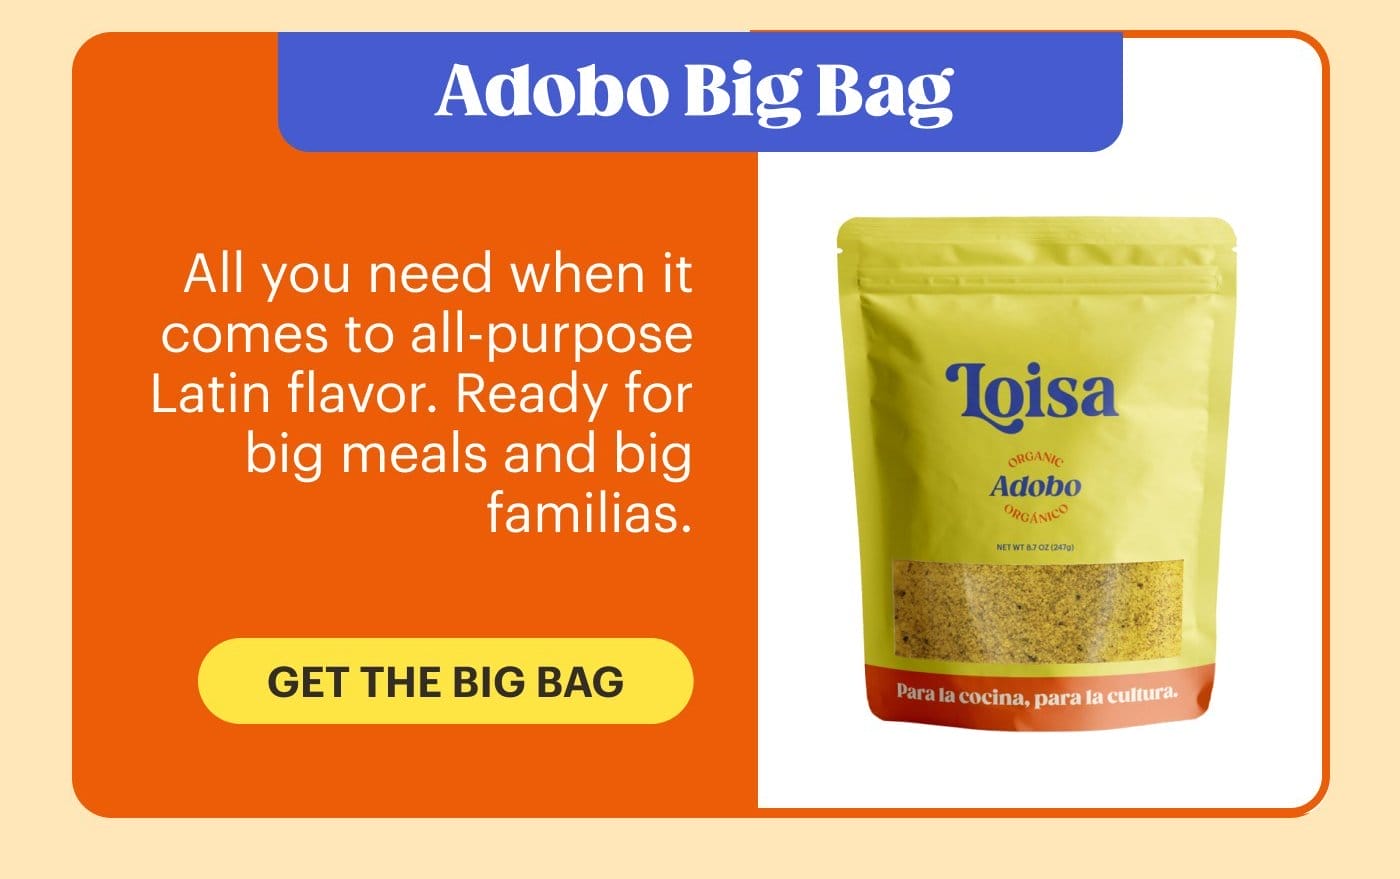 Adobo Big Bag GET THE BIG BAG